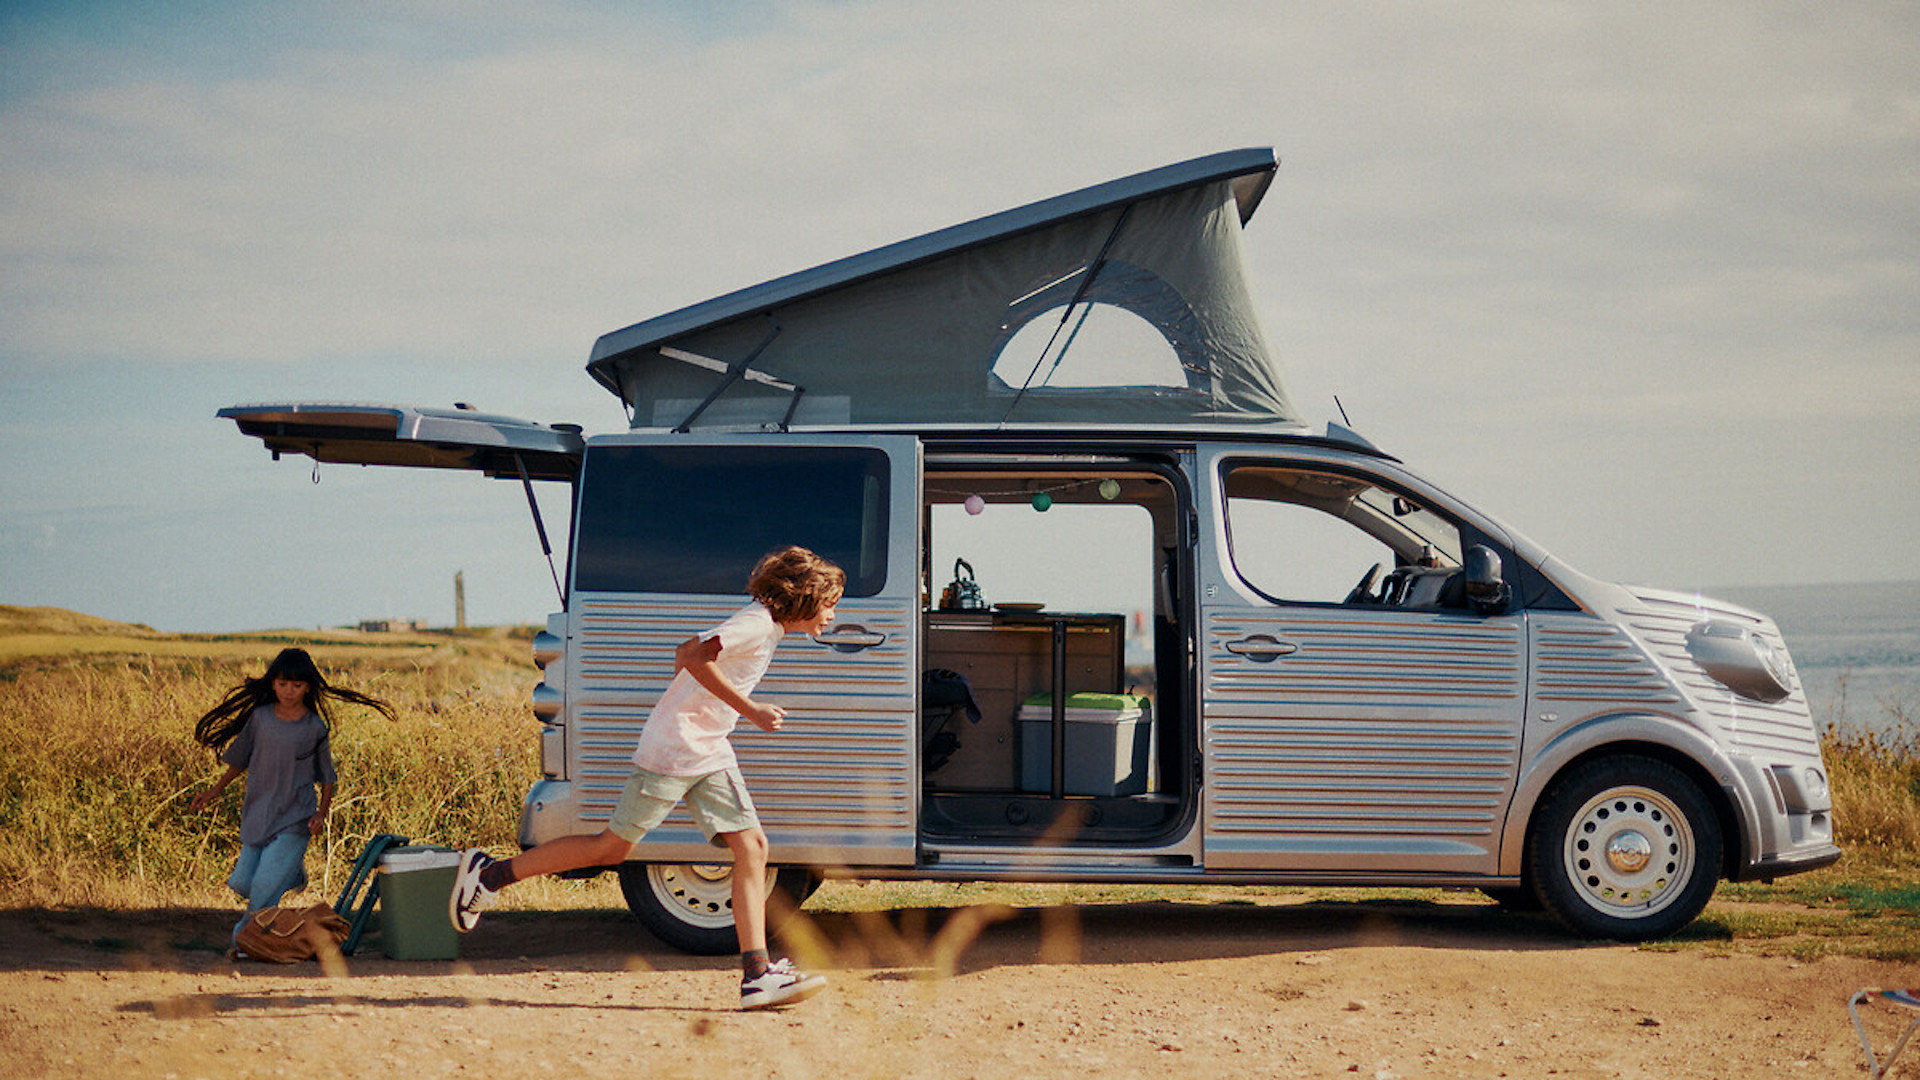 Citroën presents the new 'Holidays' camper van